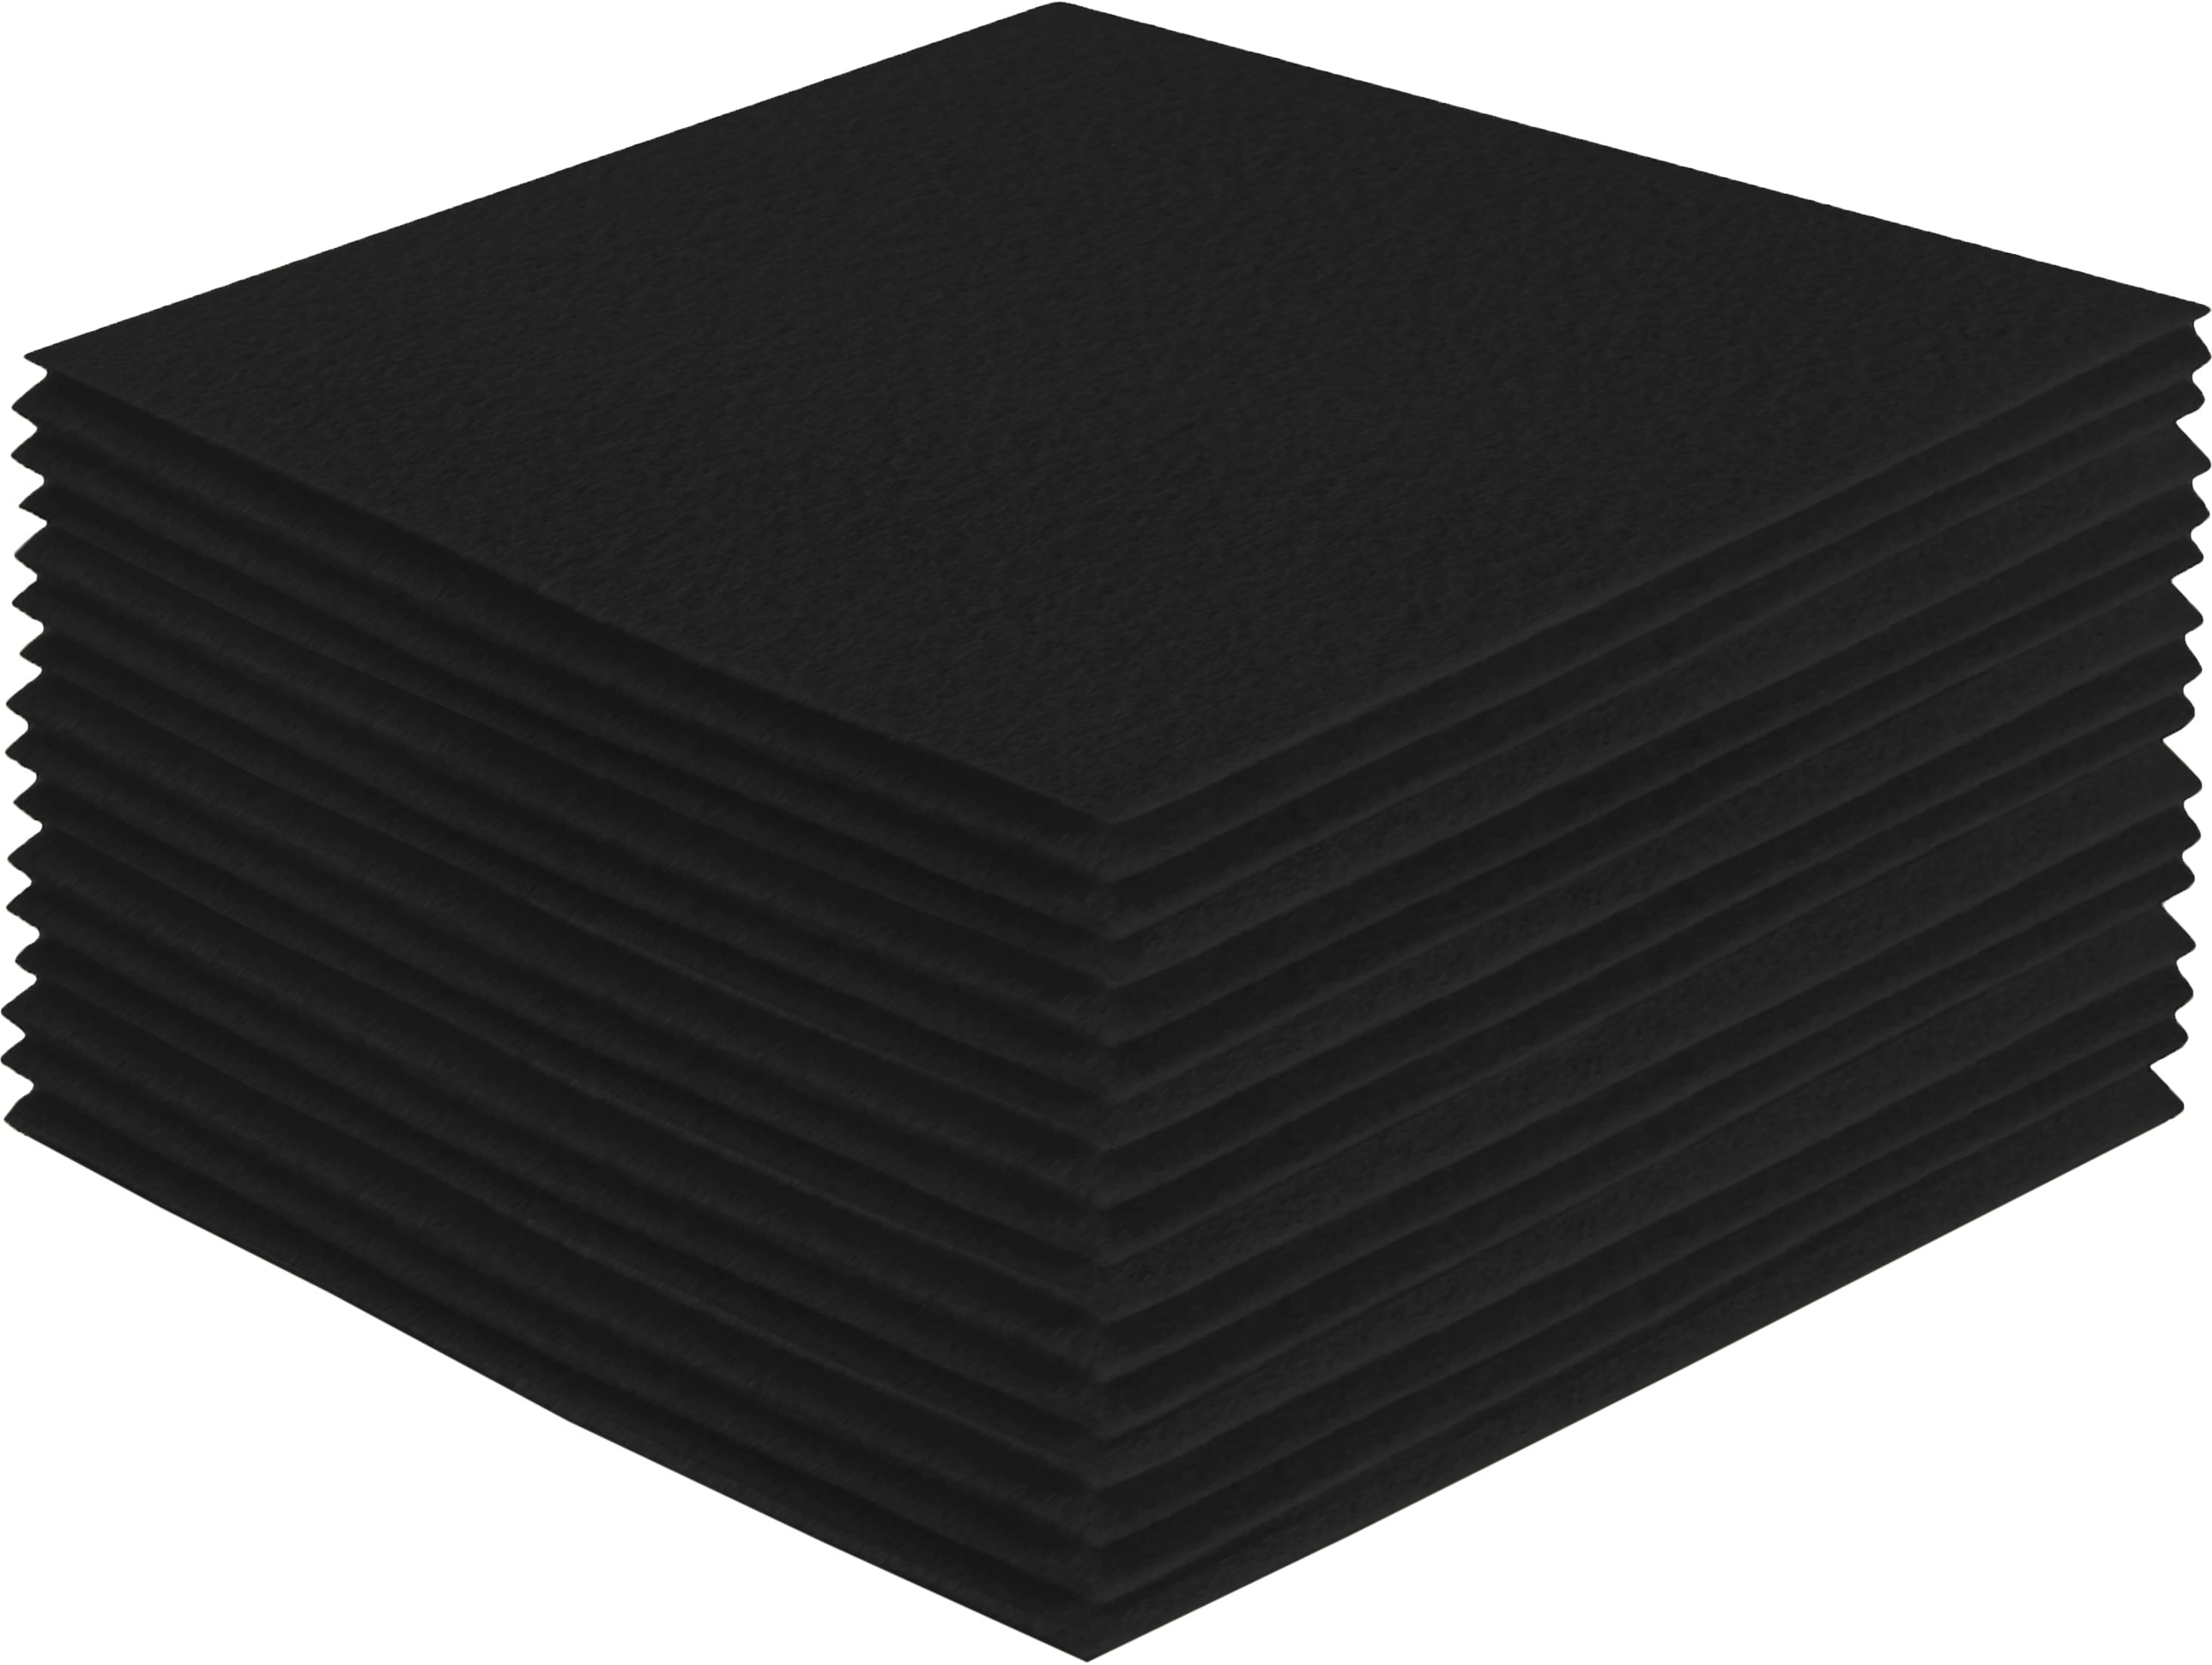 Iooleem Black Felt Sheets, 30pcs 7x11.3(Close to A4 Size - 18x28.5 cm) Pre-Cut Felt Sheet for Crafts, Craft Felt Fabric Sheets, Sewing Felt